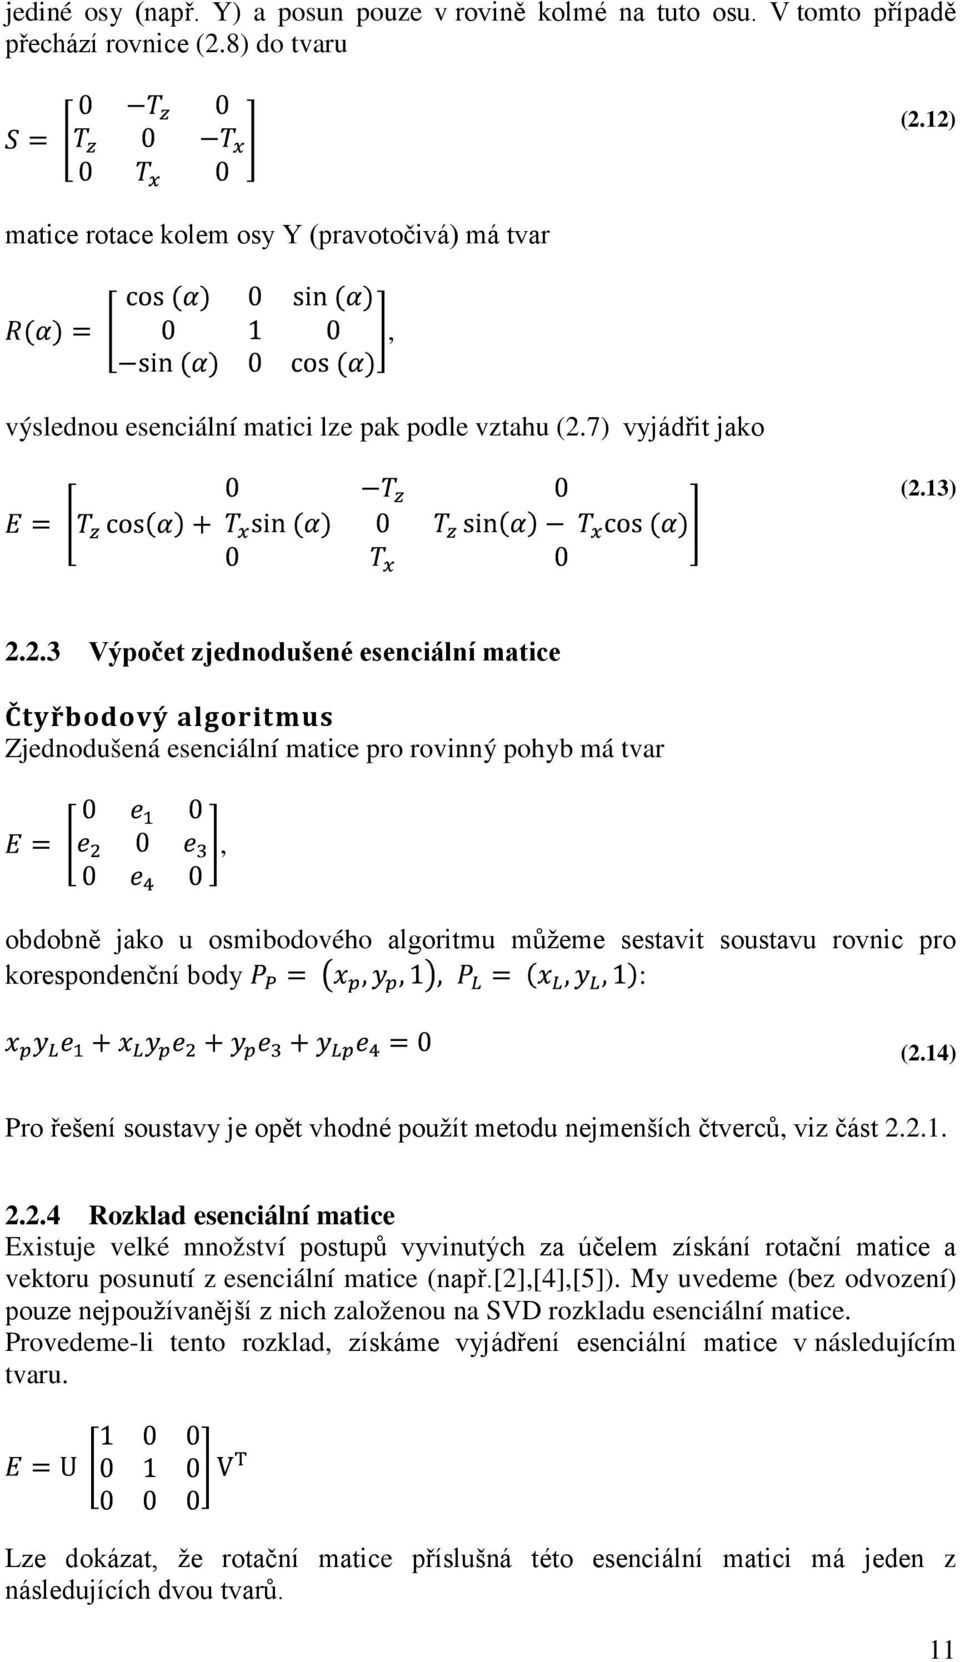 Zjednodušená esenciální matice pro rovinný pohyb má tvar, obdobně jako u osmibodového algoritmu můžeme sestavit soustavu rovnic pro korespondenční body : (2.